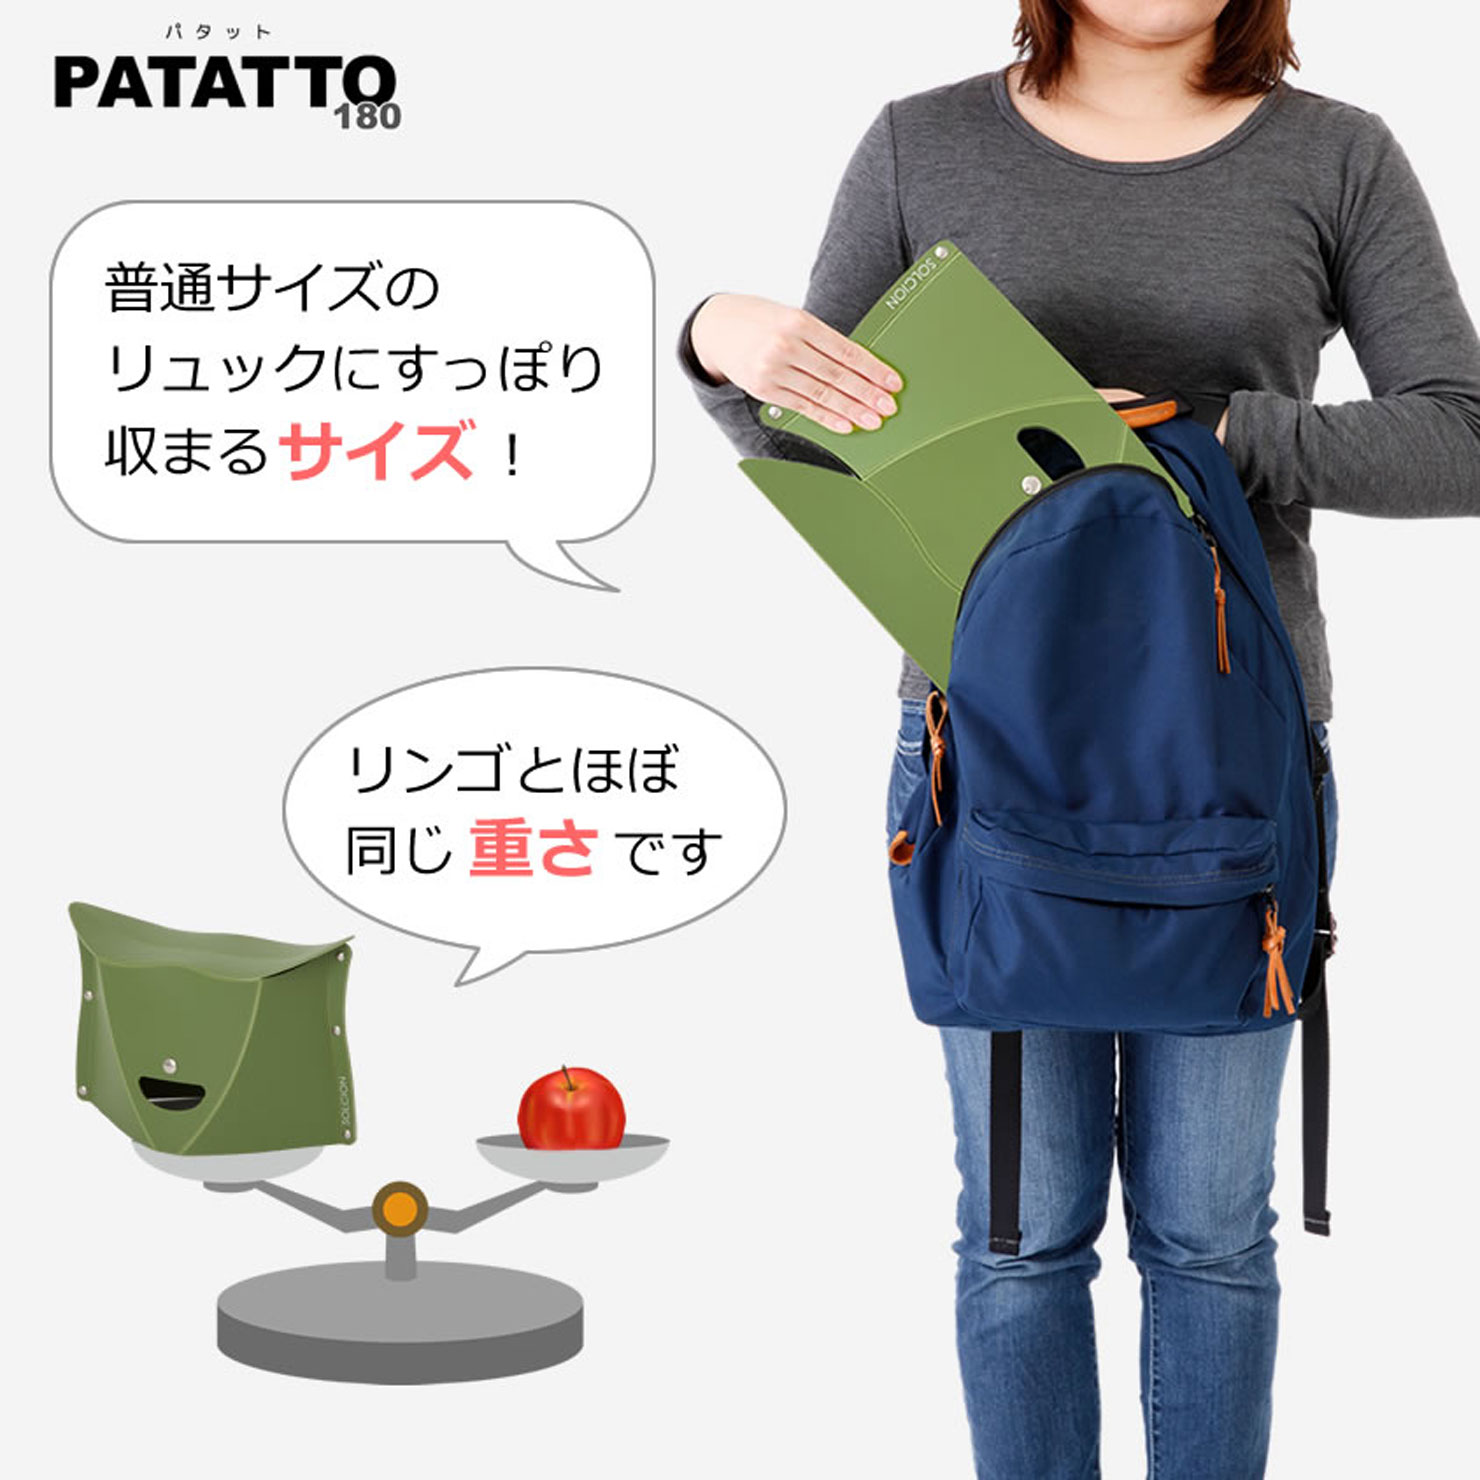 PATATTO180｜商品一覧｜SOLCION 公式ブランドサイト